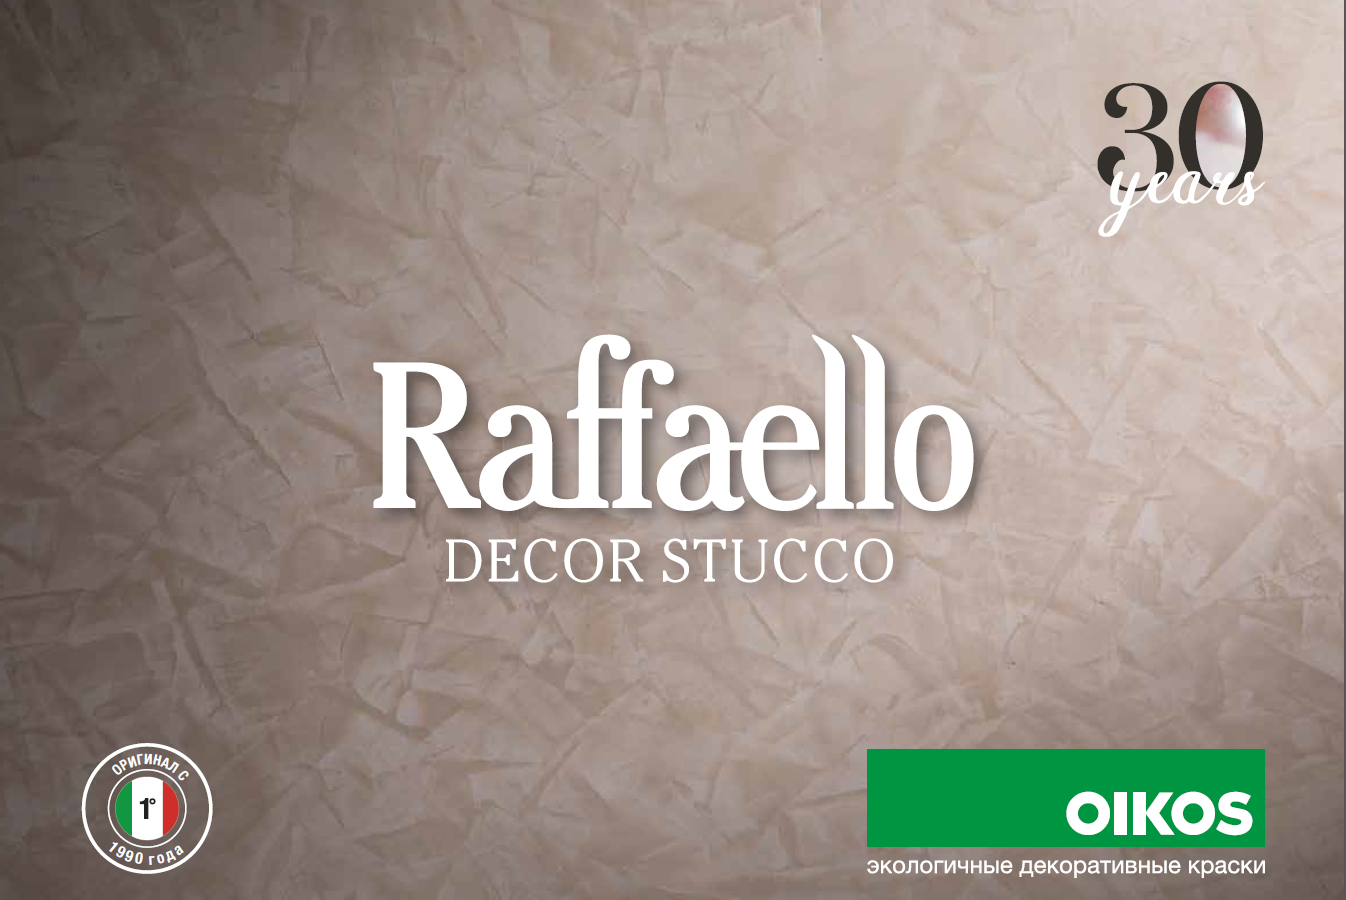 30 лет с момента рождения Raffaello Decor Stucco